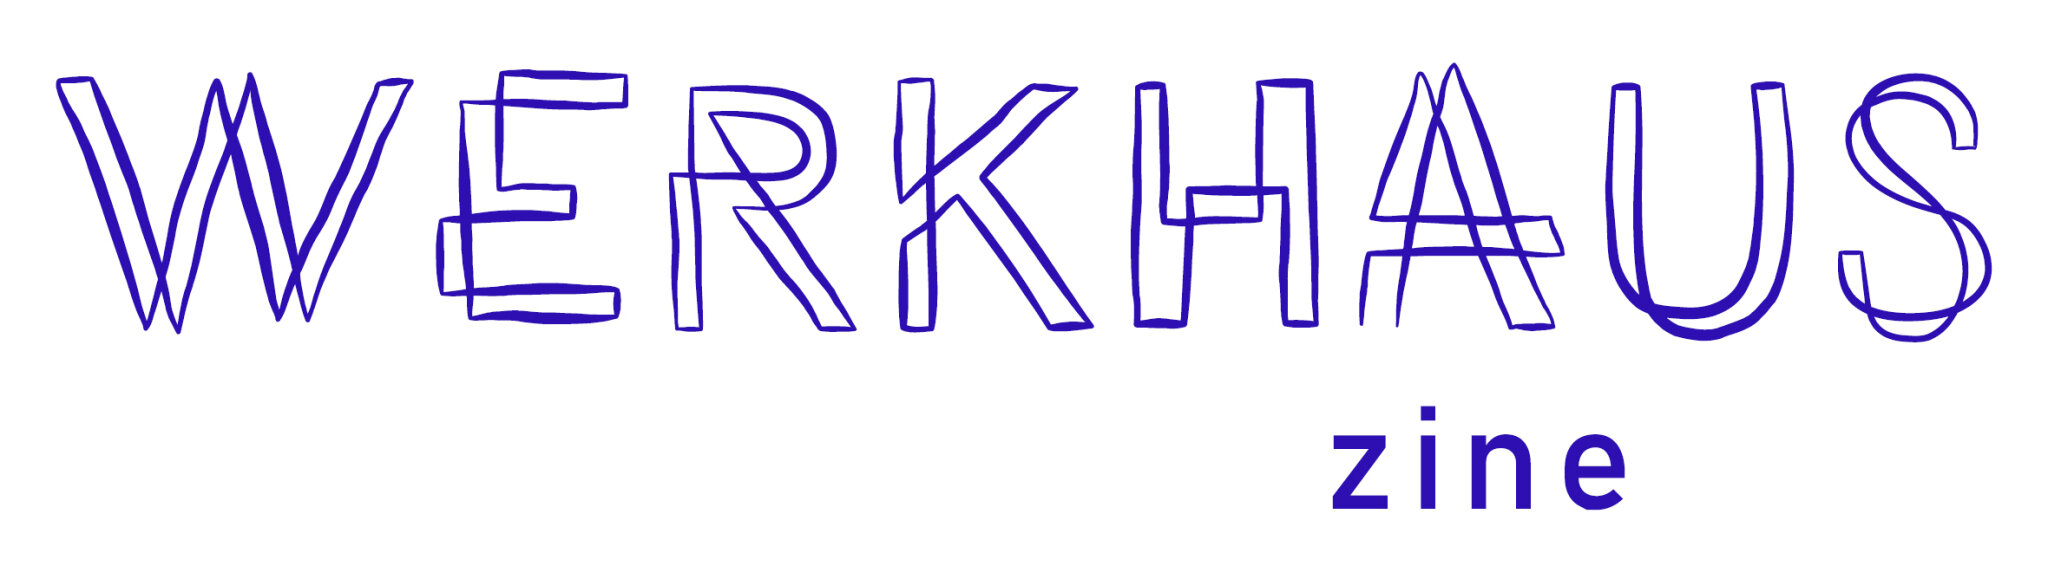 werkhaus-zine-logo-2.jpeg